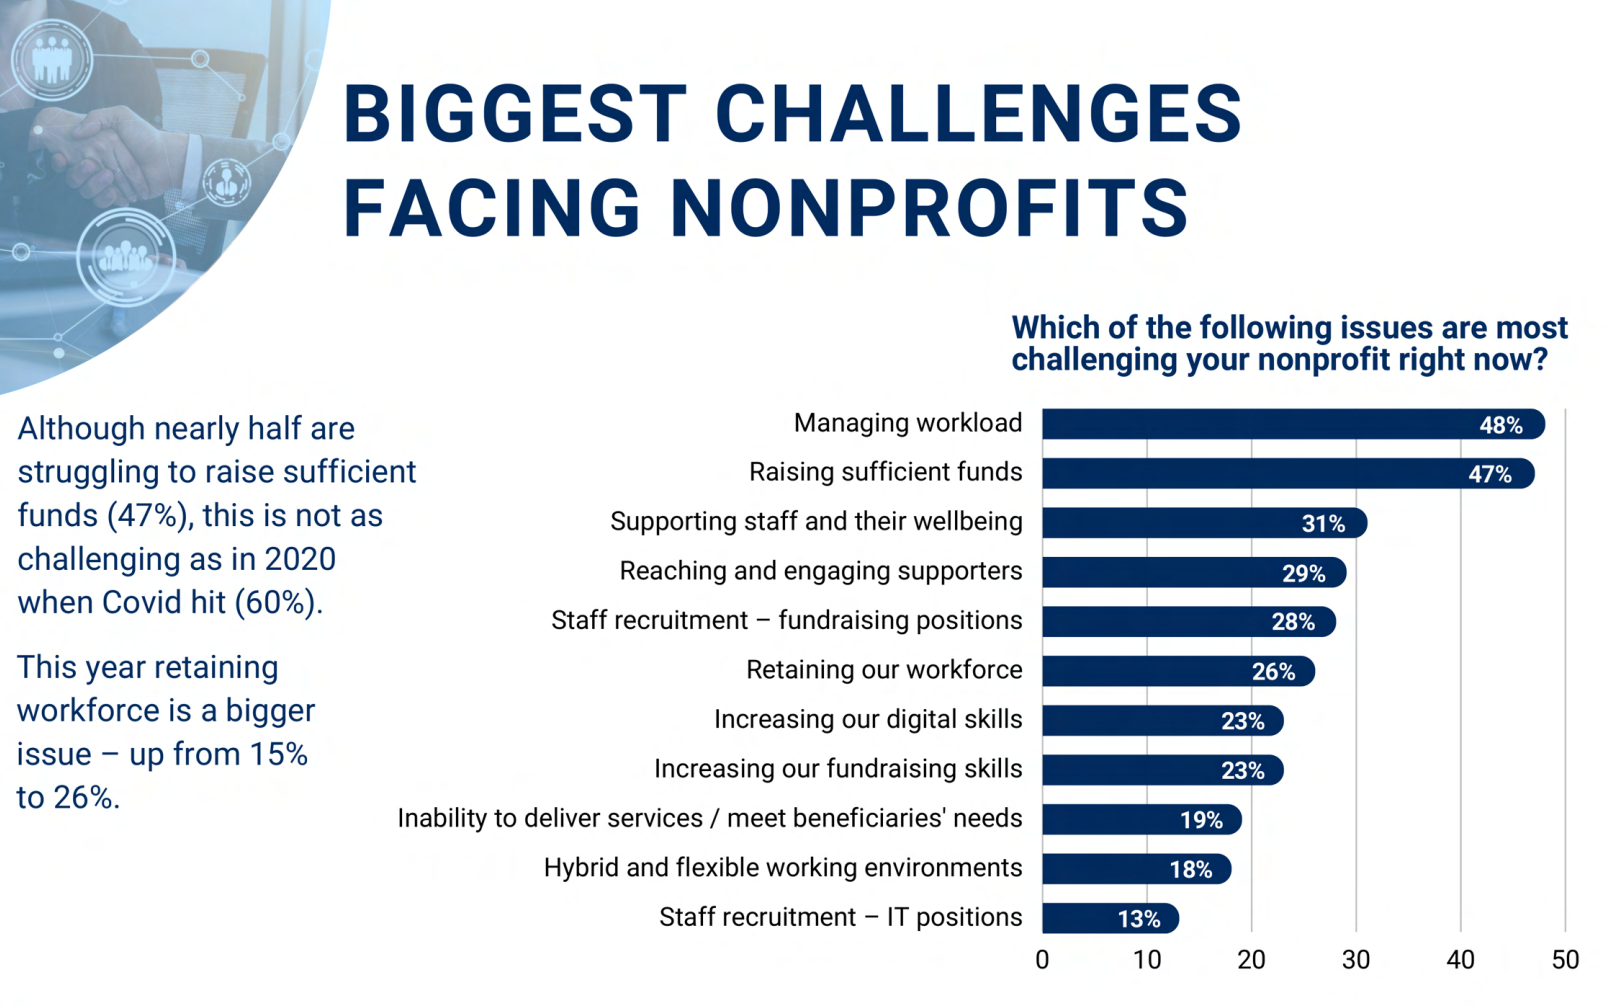 Balkendiagramm zu den größten Herausforderungen von Nonprofits